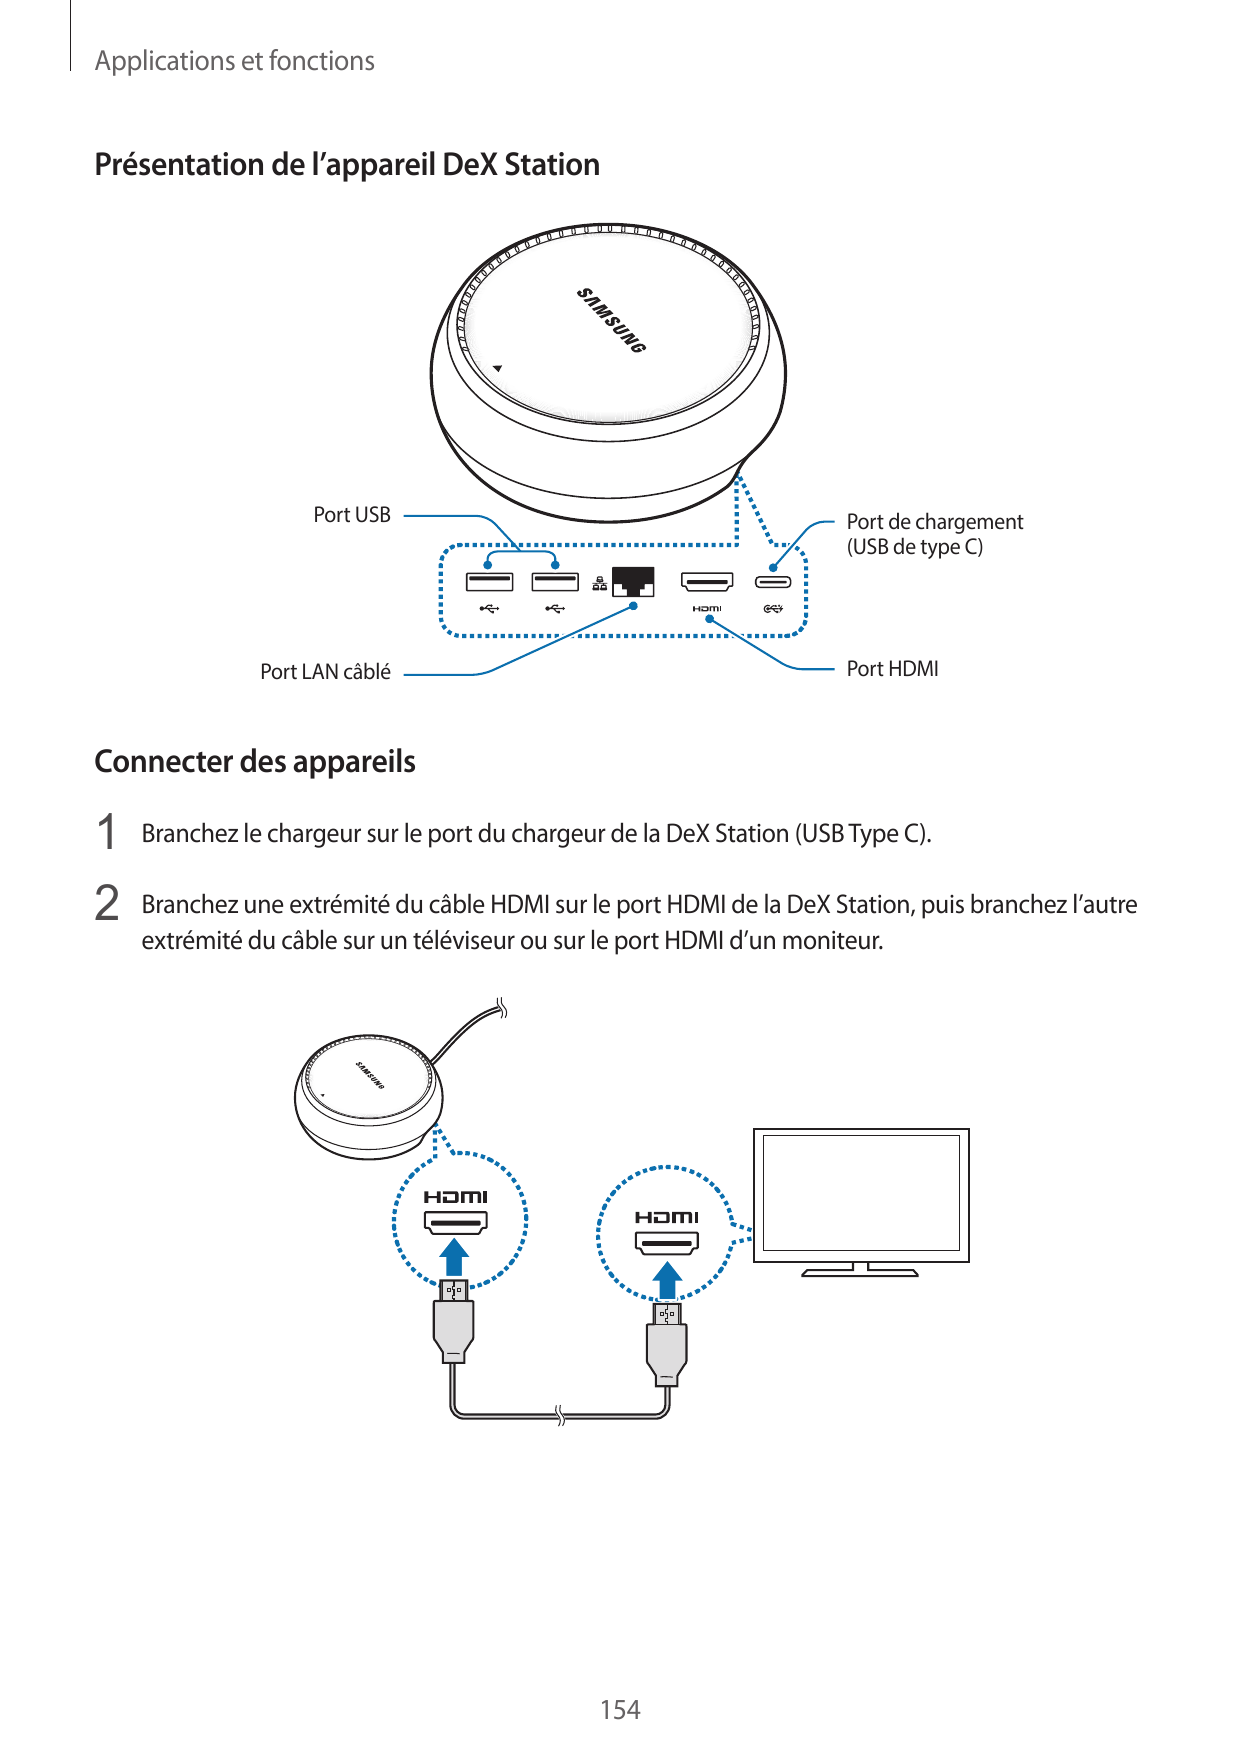 Applications et fonctionsPrésentation de l’appareil DeX StationPort USBPort de chargement(USB de type C)Port HDMIPort LAN câbléC